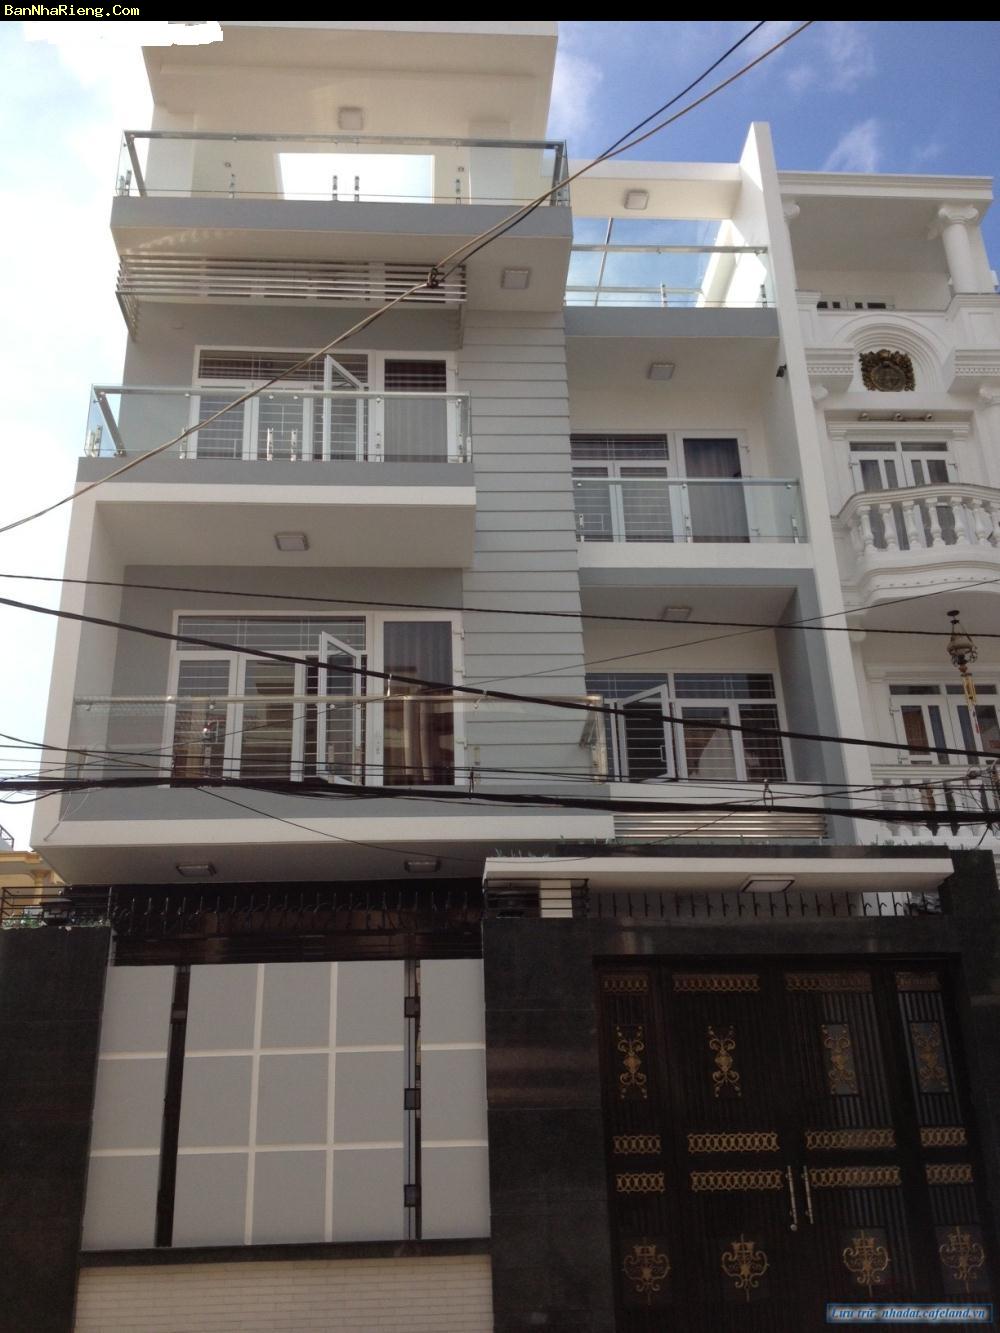 Chính chủ bán nhà 4,5x16,5m, hẻm 5m, 3 lầu, Dương Quảng Hàm, GV.